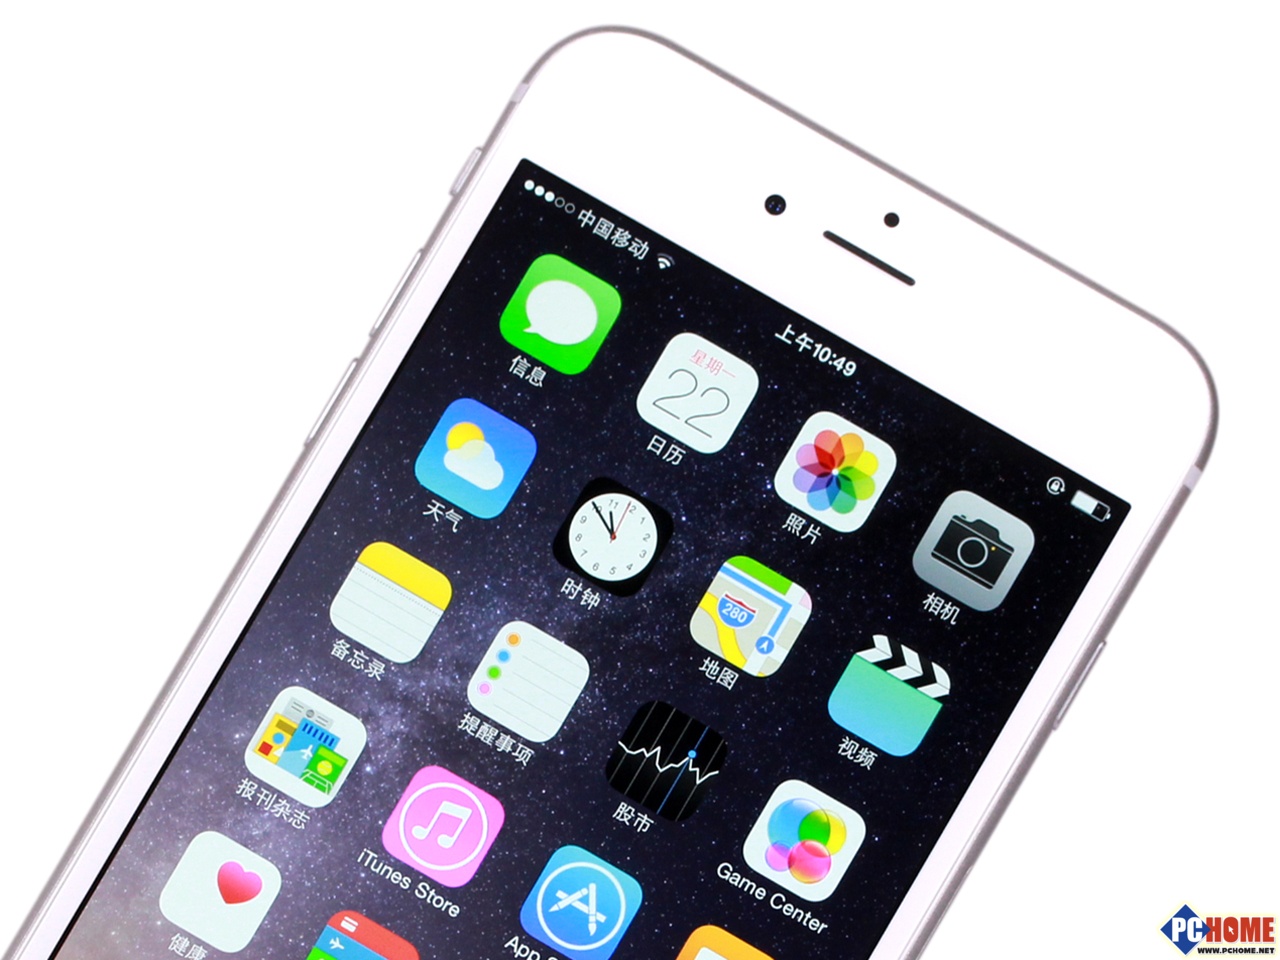 苹果 iPhone 6 Plus除了A8处理器之外，iPhone 6 Plus的协处理器也升级至M8版本，M8运动协处理器新增了包括气压计等新功能，并且还能够更好的协同iOS 8中的健康相关的应用。它能够持续测量来自加速感应器、指南针、陀螺仪和全新气压计的数据。这分担了 A8 芯片的工作量，从而提升了效能。